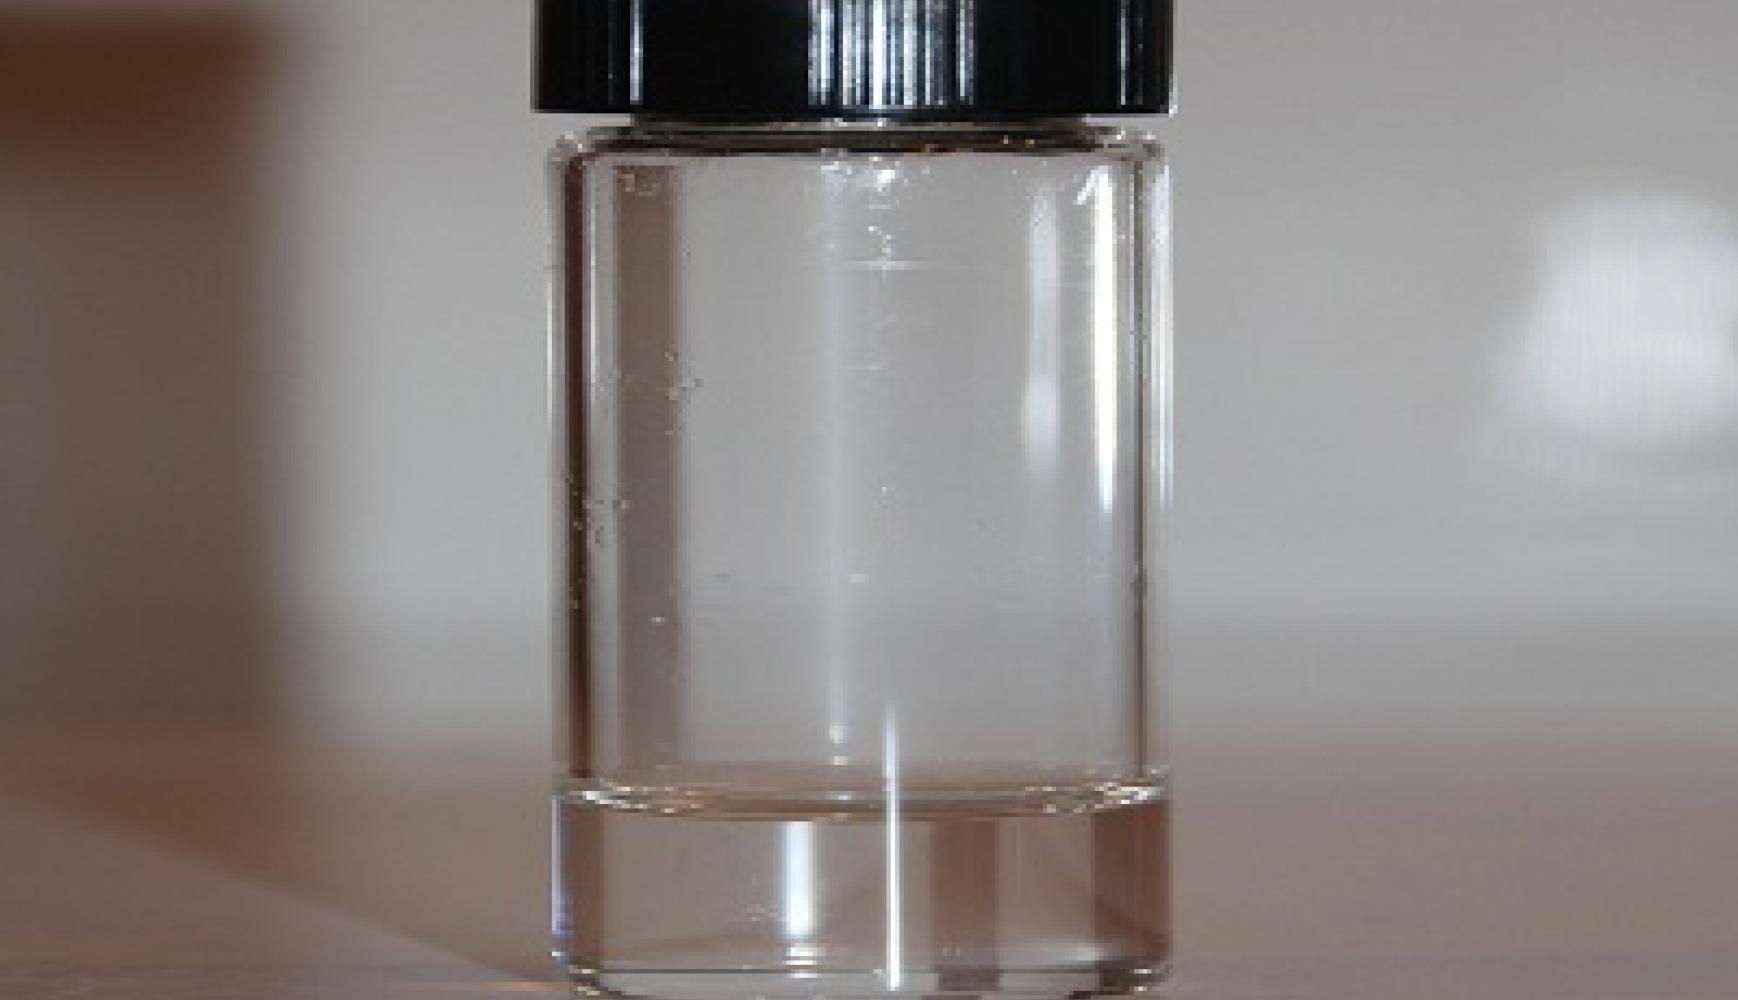 Hydrazine hydrate